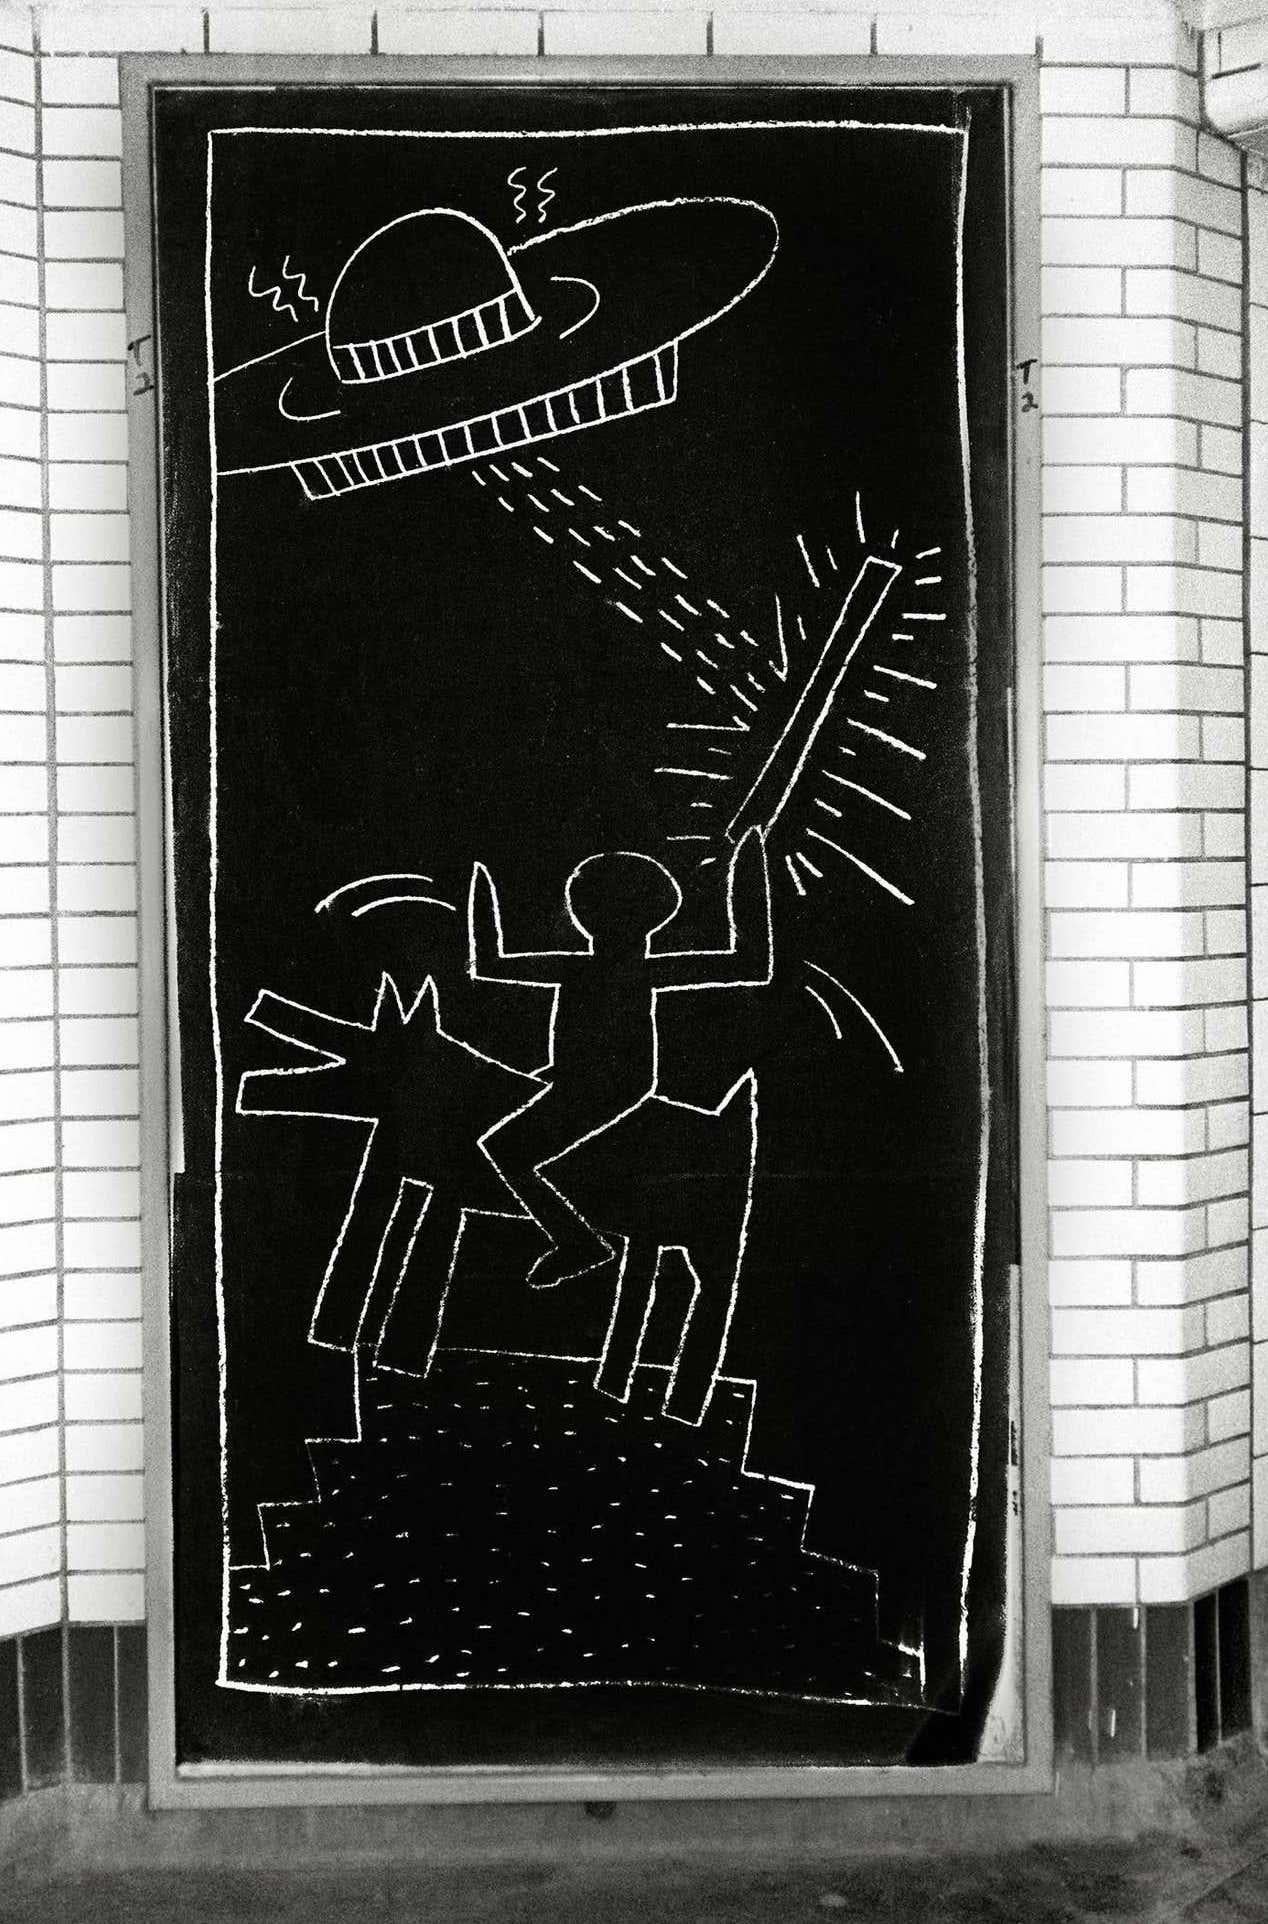 Subway-Kunstfoto von Keith Haring, ca. 1981 (Keith Haring, Zeichnungen der U-Bahn)  (Pop-Art), Photograph, von Fernando Natalici